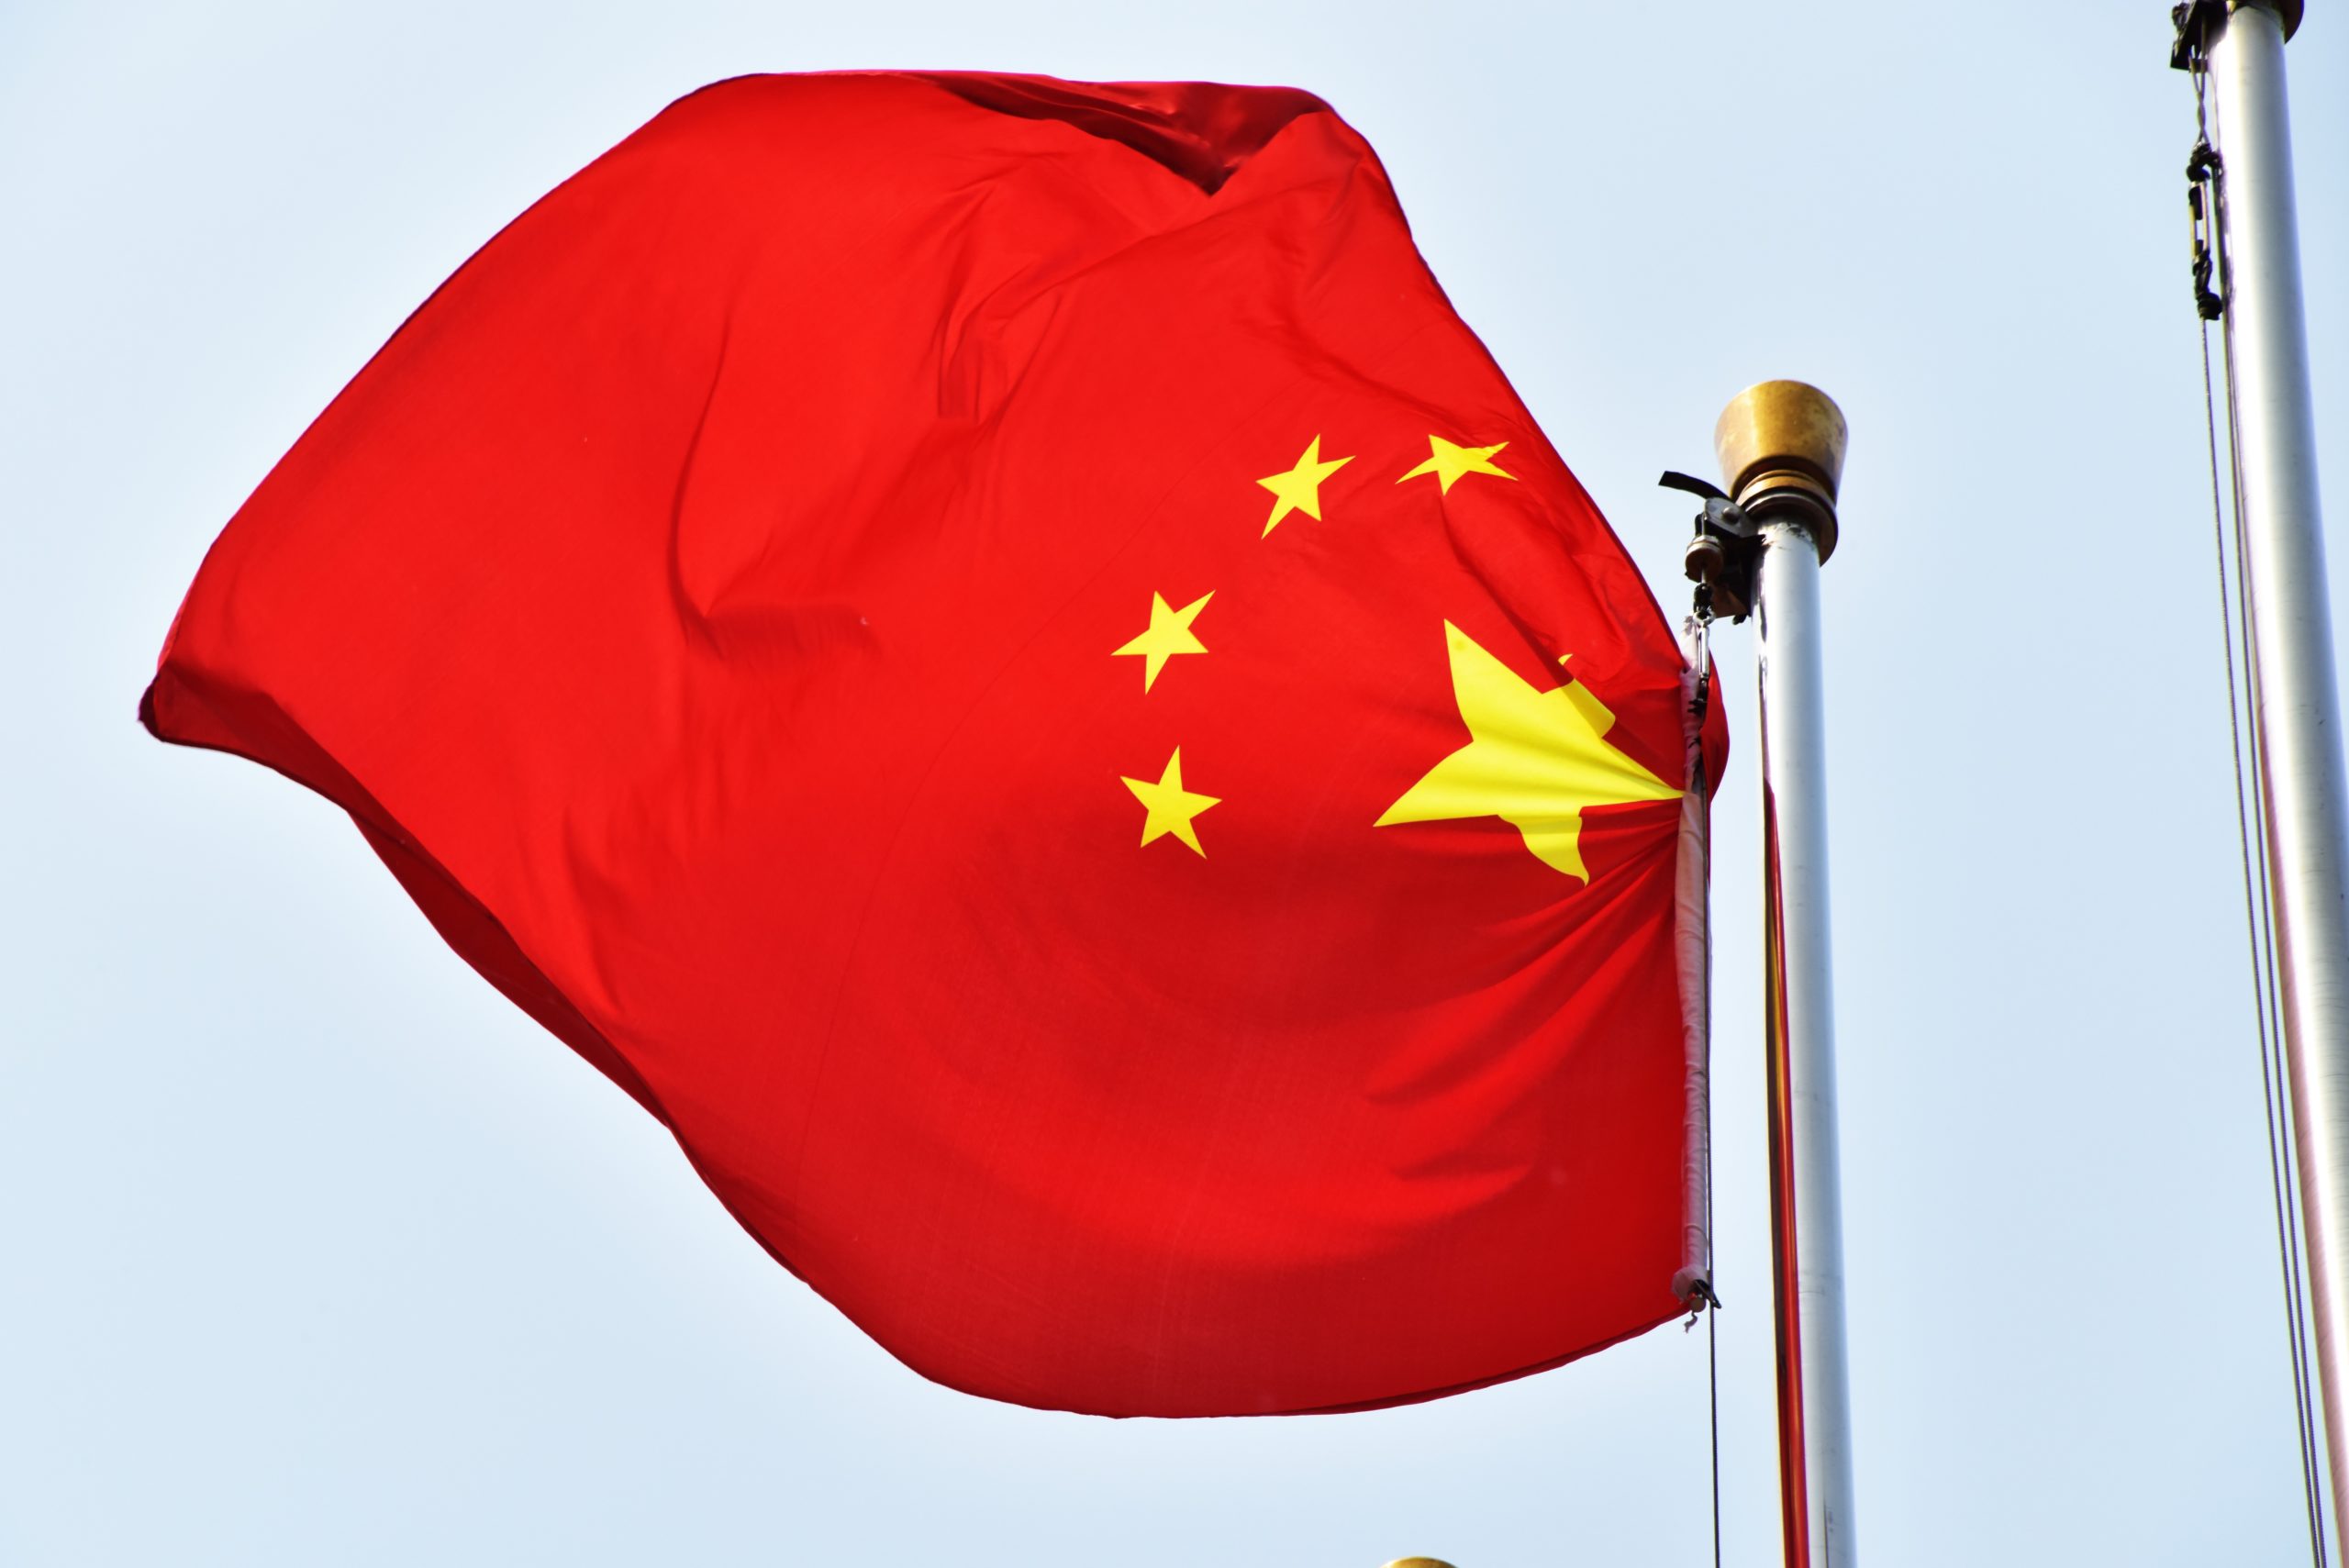 Kiinan lippu liehuu tuulessa